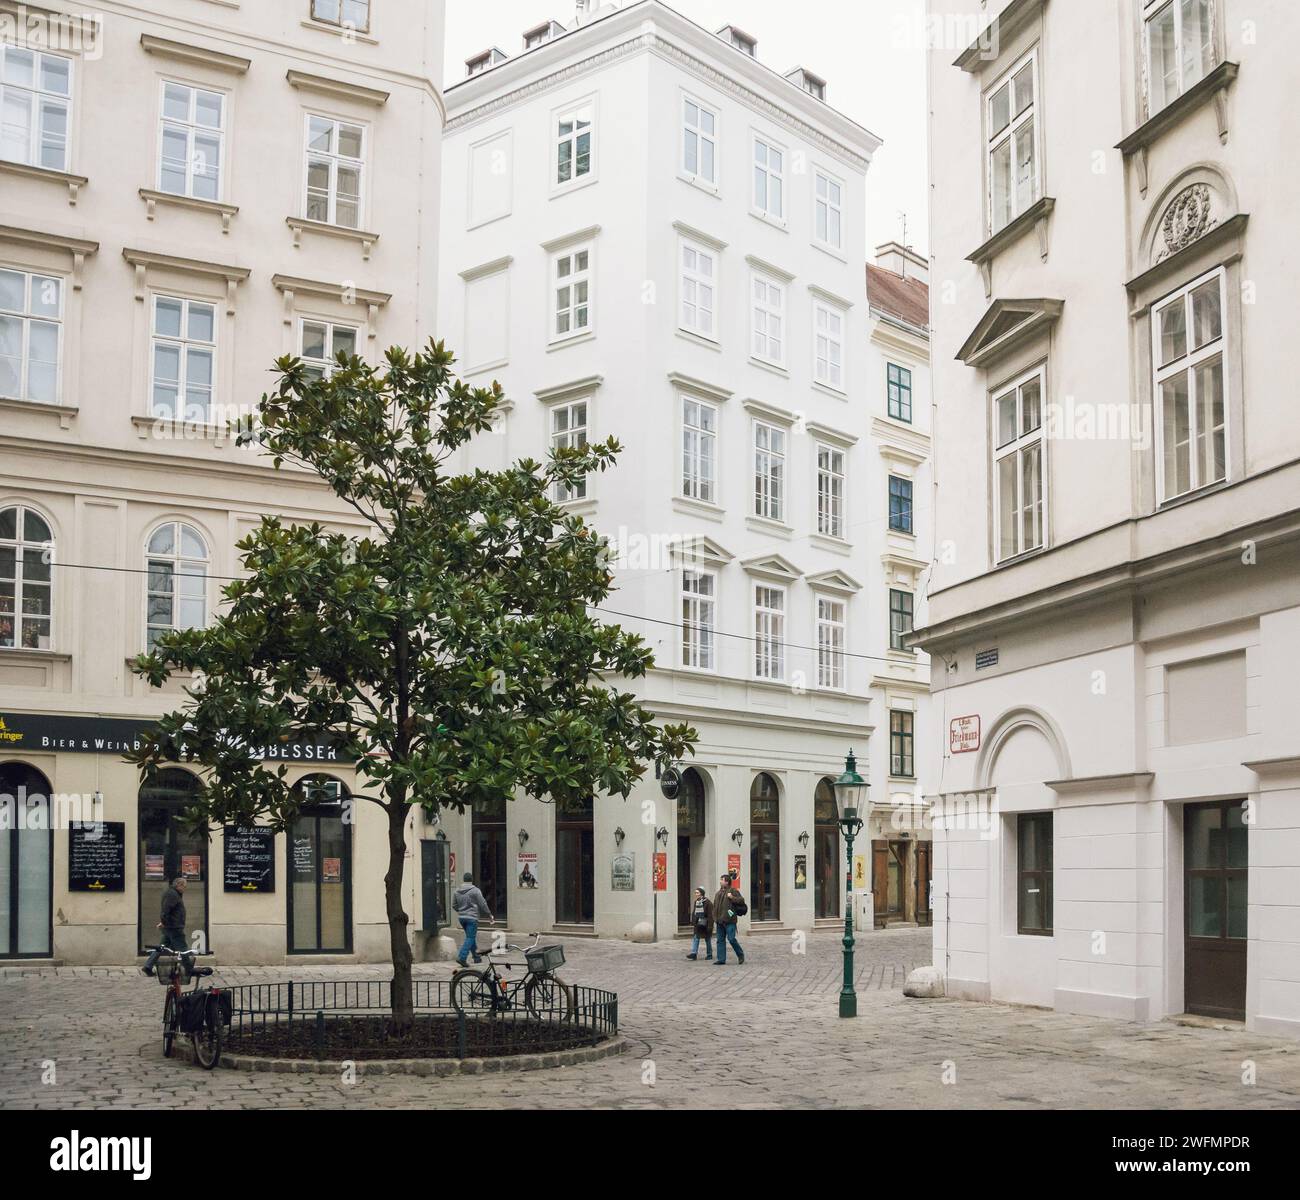 Desider-Friedmann-Platz Plaza en el centro de Viena. Fachadas de edificios del siglo XIX en zona peatonal en el distrito de Innere Stadt (casco antiguo). Foto de stock